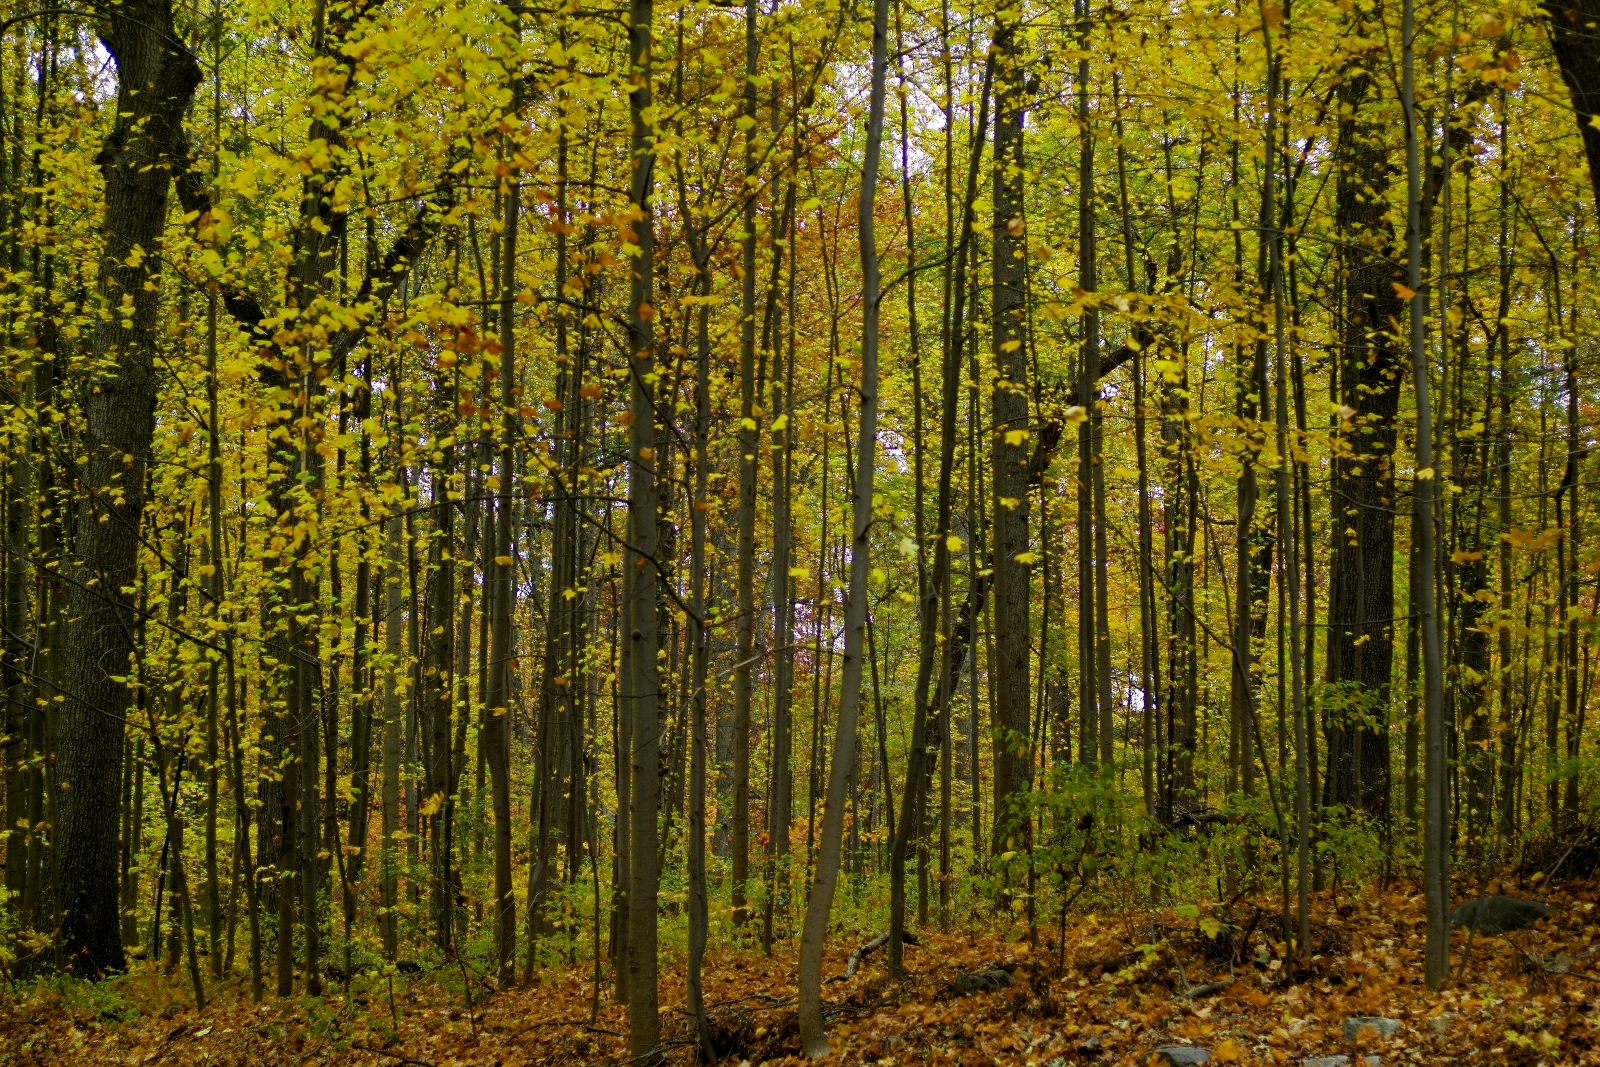 fall foliage in nyc - van cortlandt park